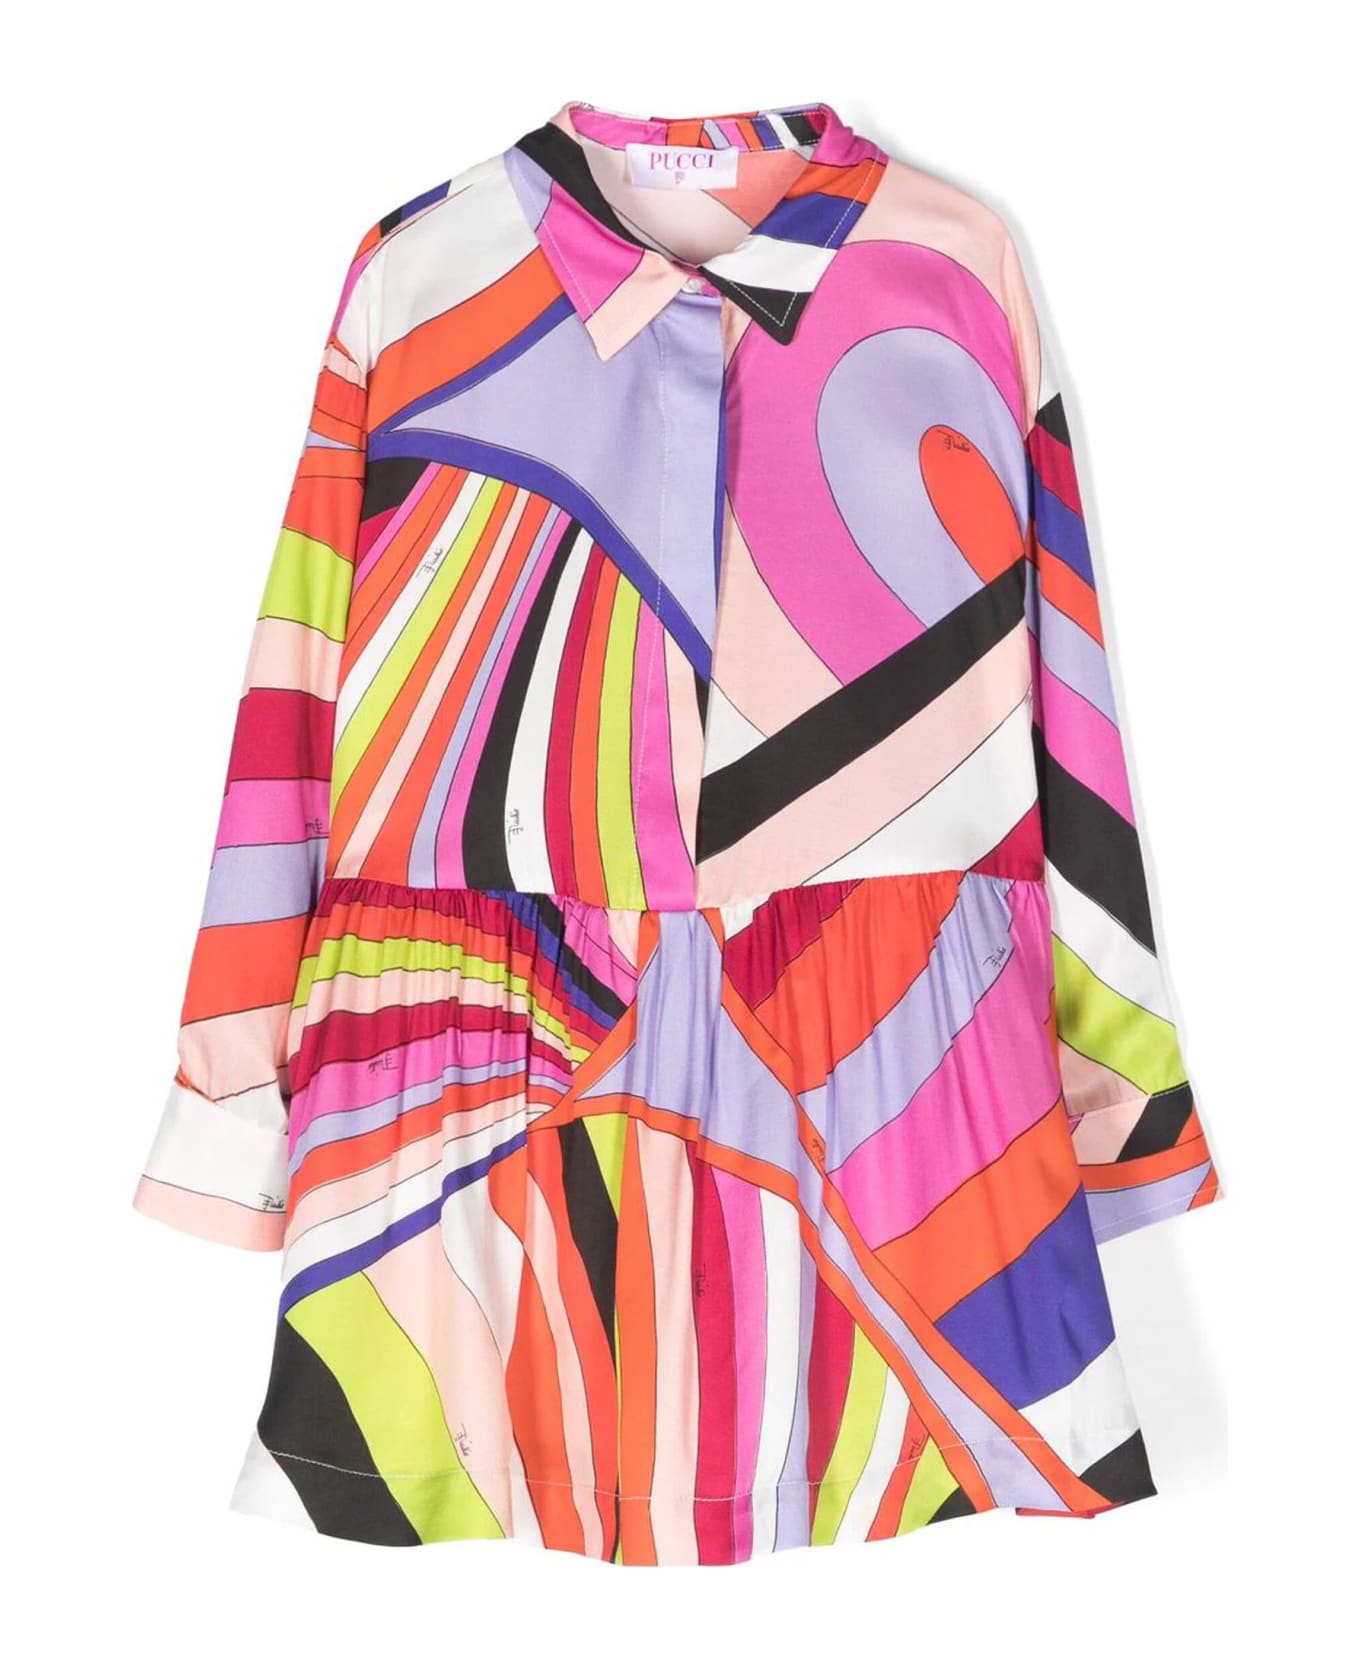 Pucci Multicolor Cotton Dress - Multicolor